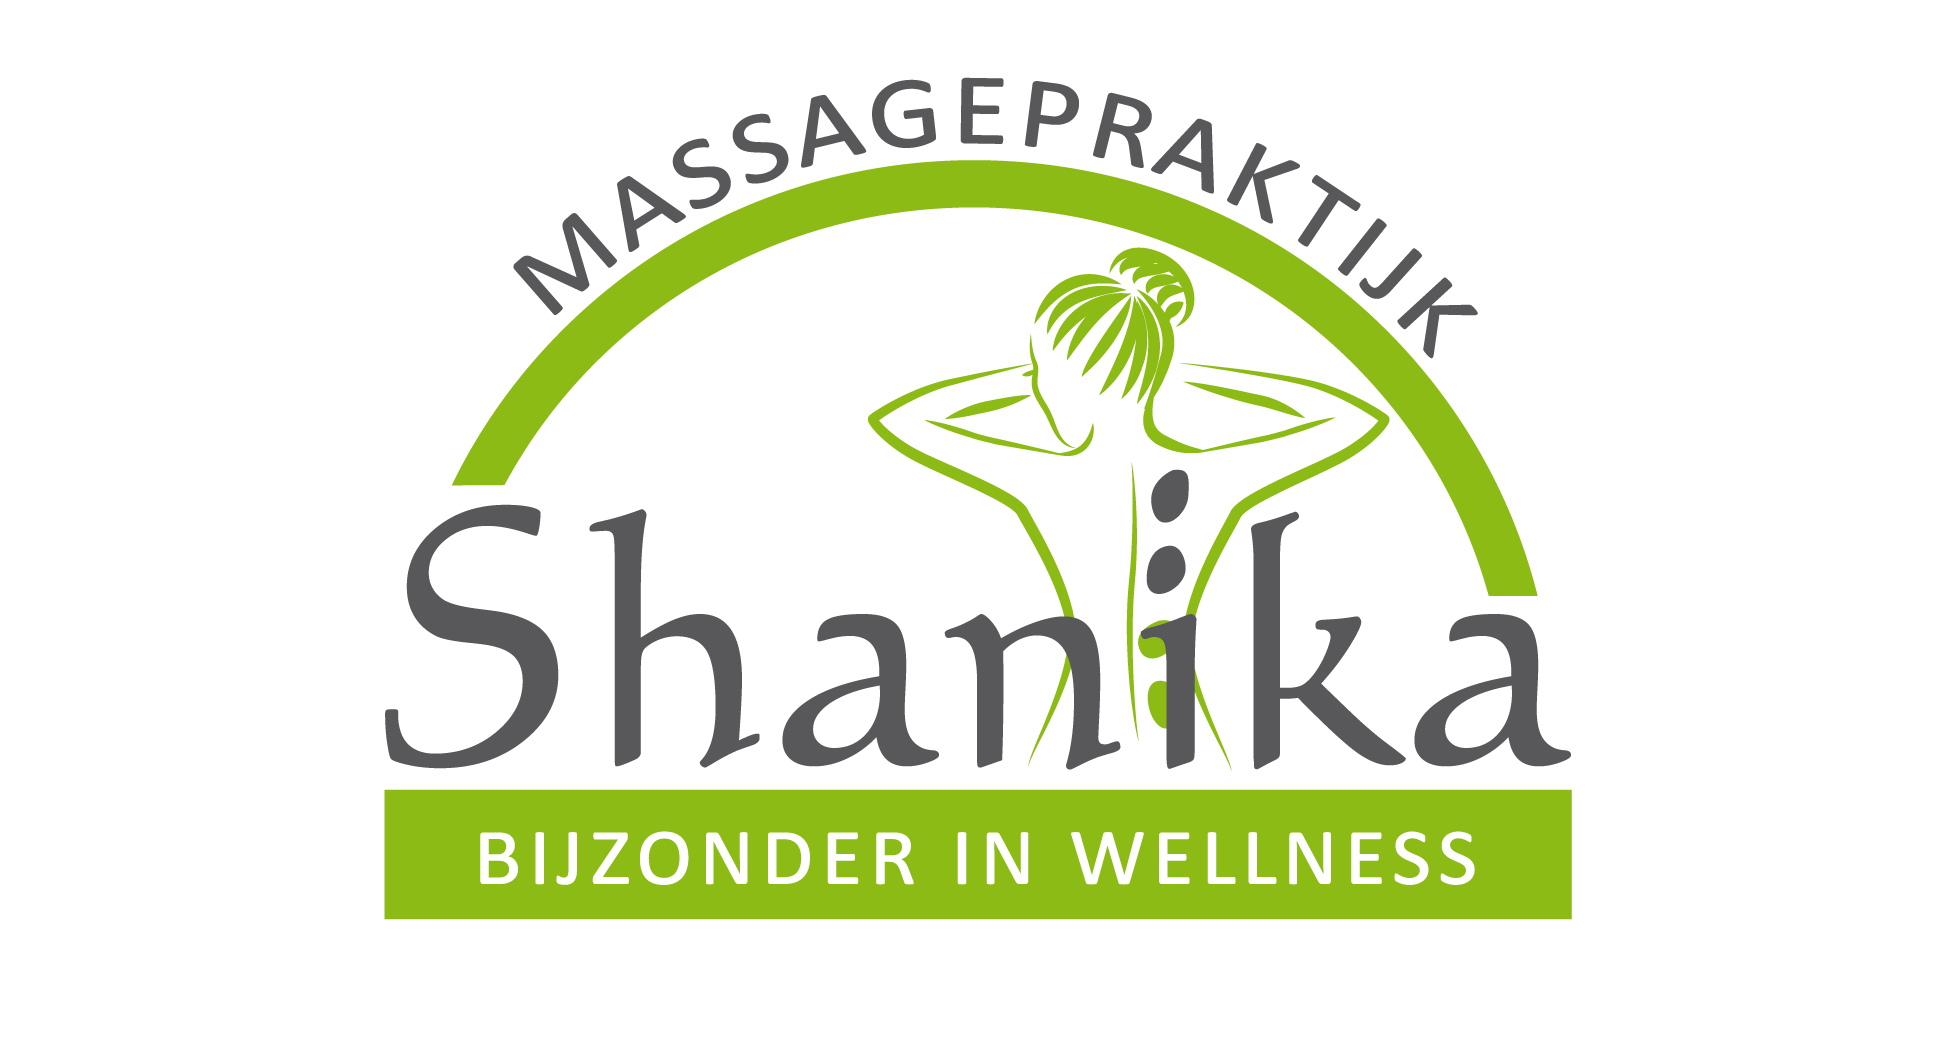 Massagepraktijk Shanika Heerenveen